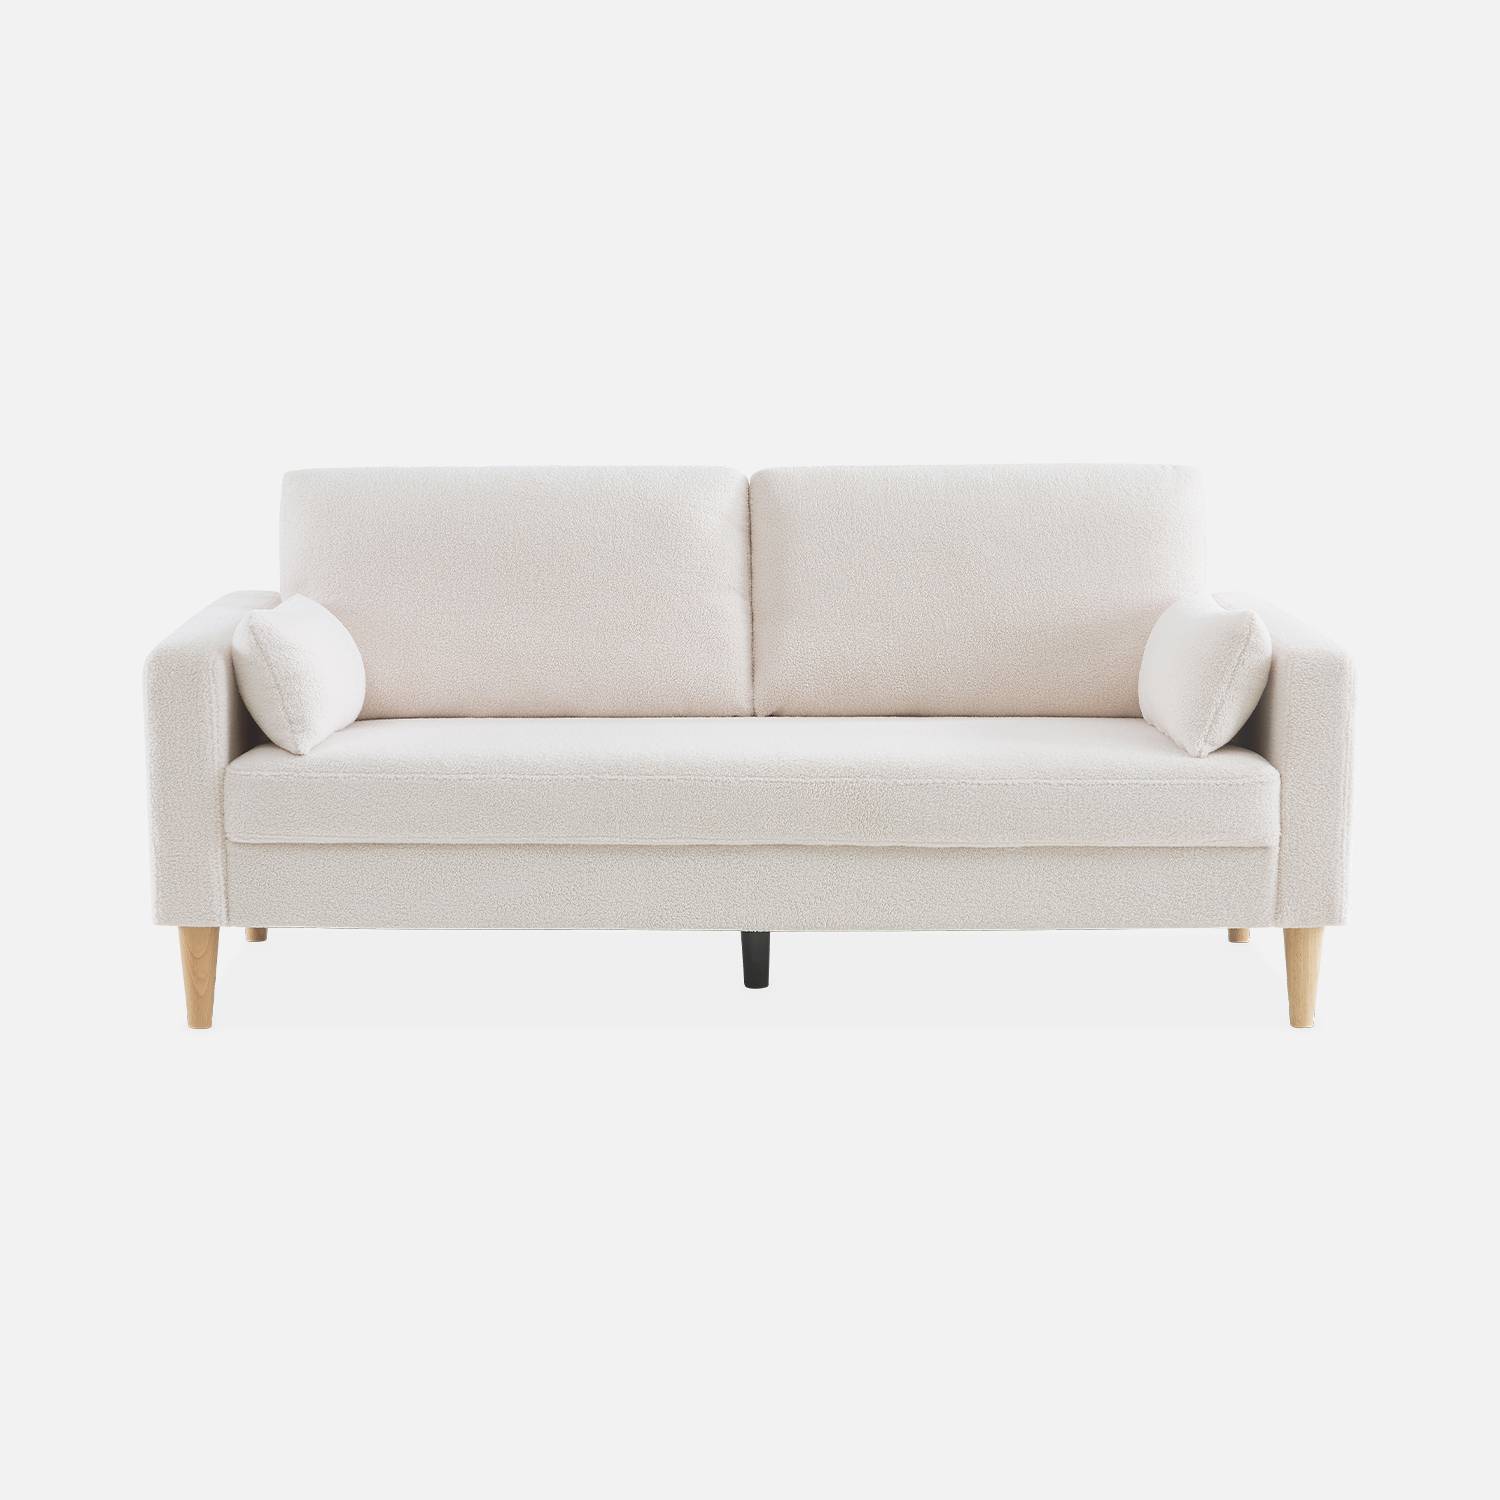 Sofa mit weißem Bouclé Teddystoff - Bjorn - 3-sitziges fixes Sofa mit Holzbeinen, skandinavischer Stil   Photo6